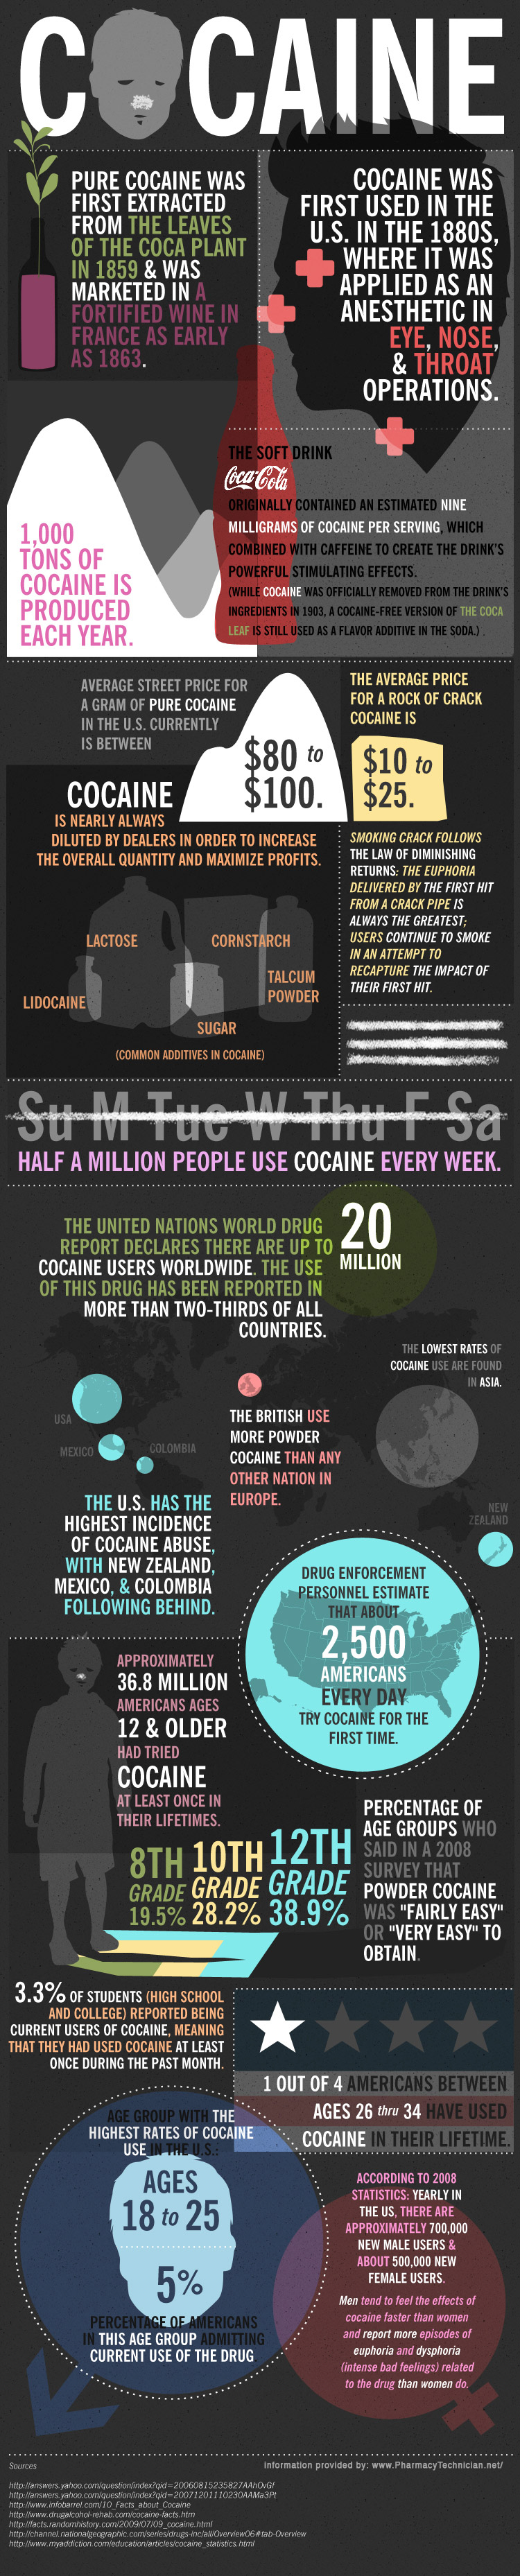 Cocaine Infographic